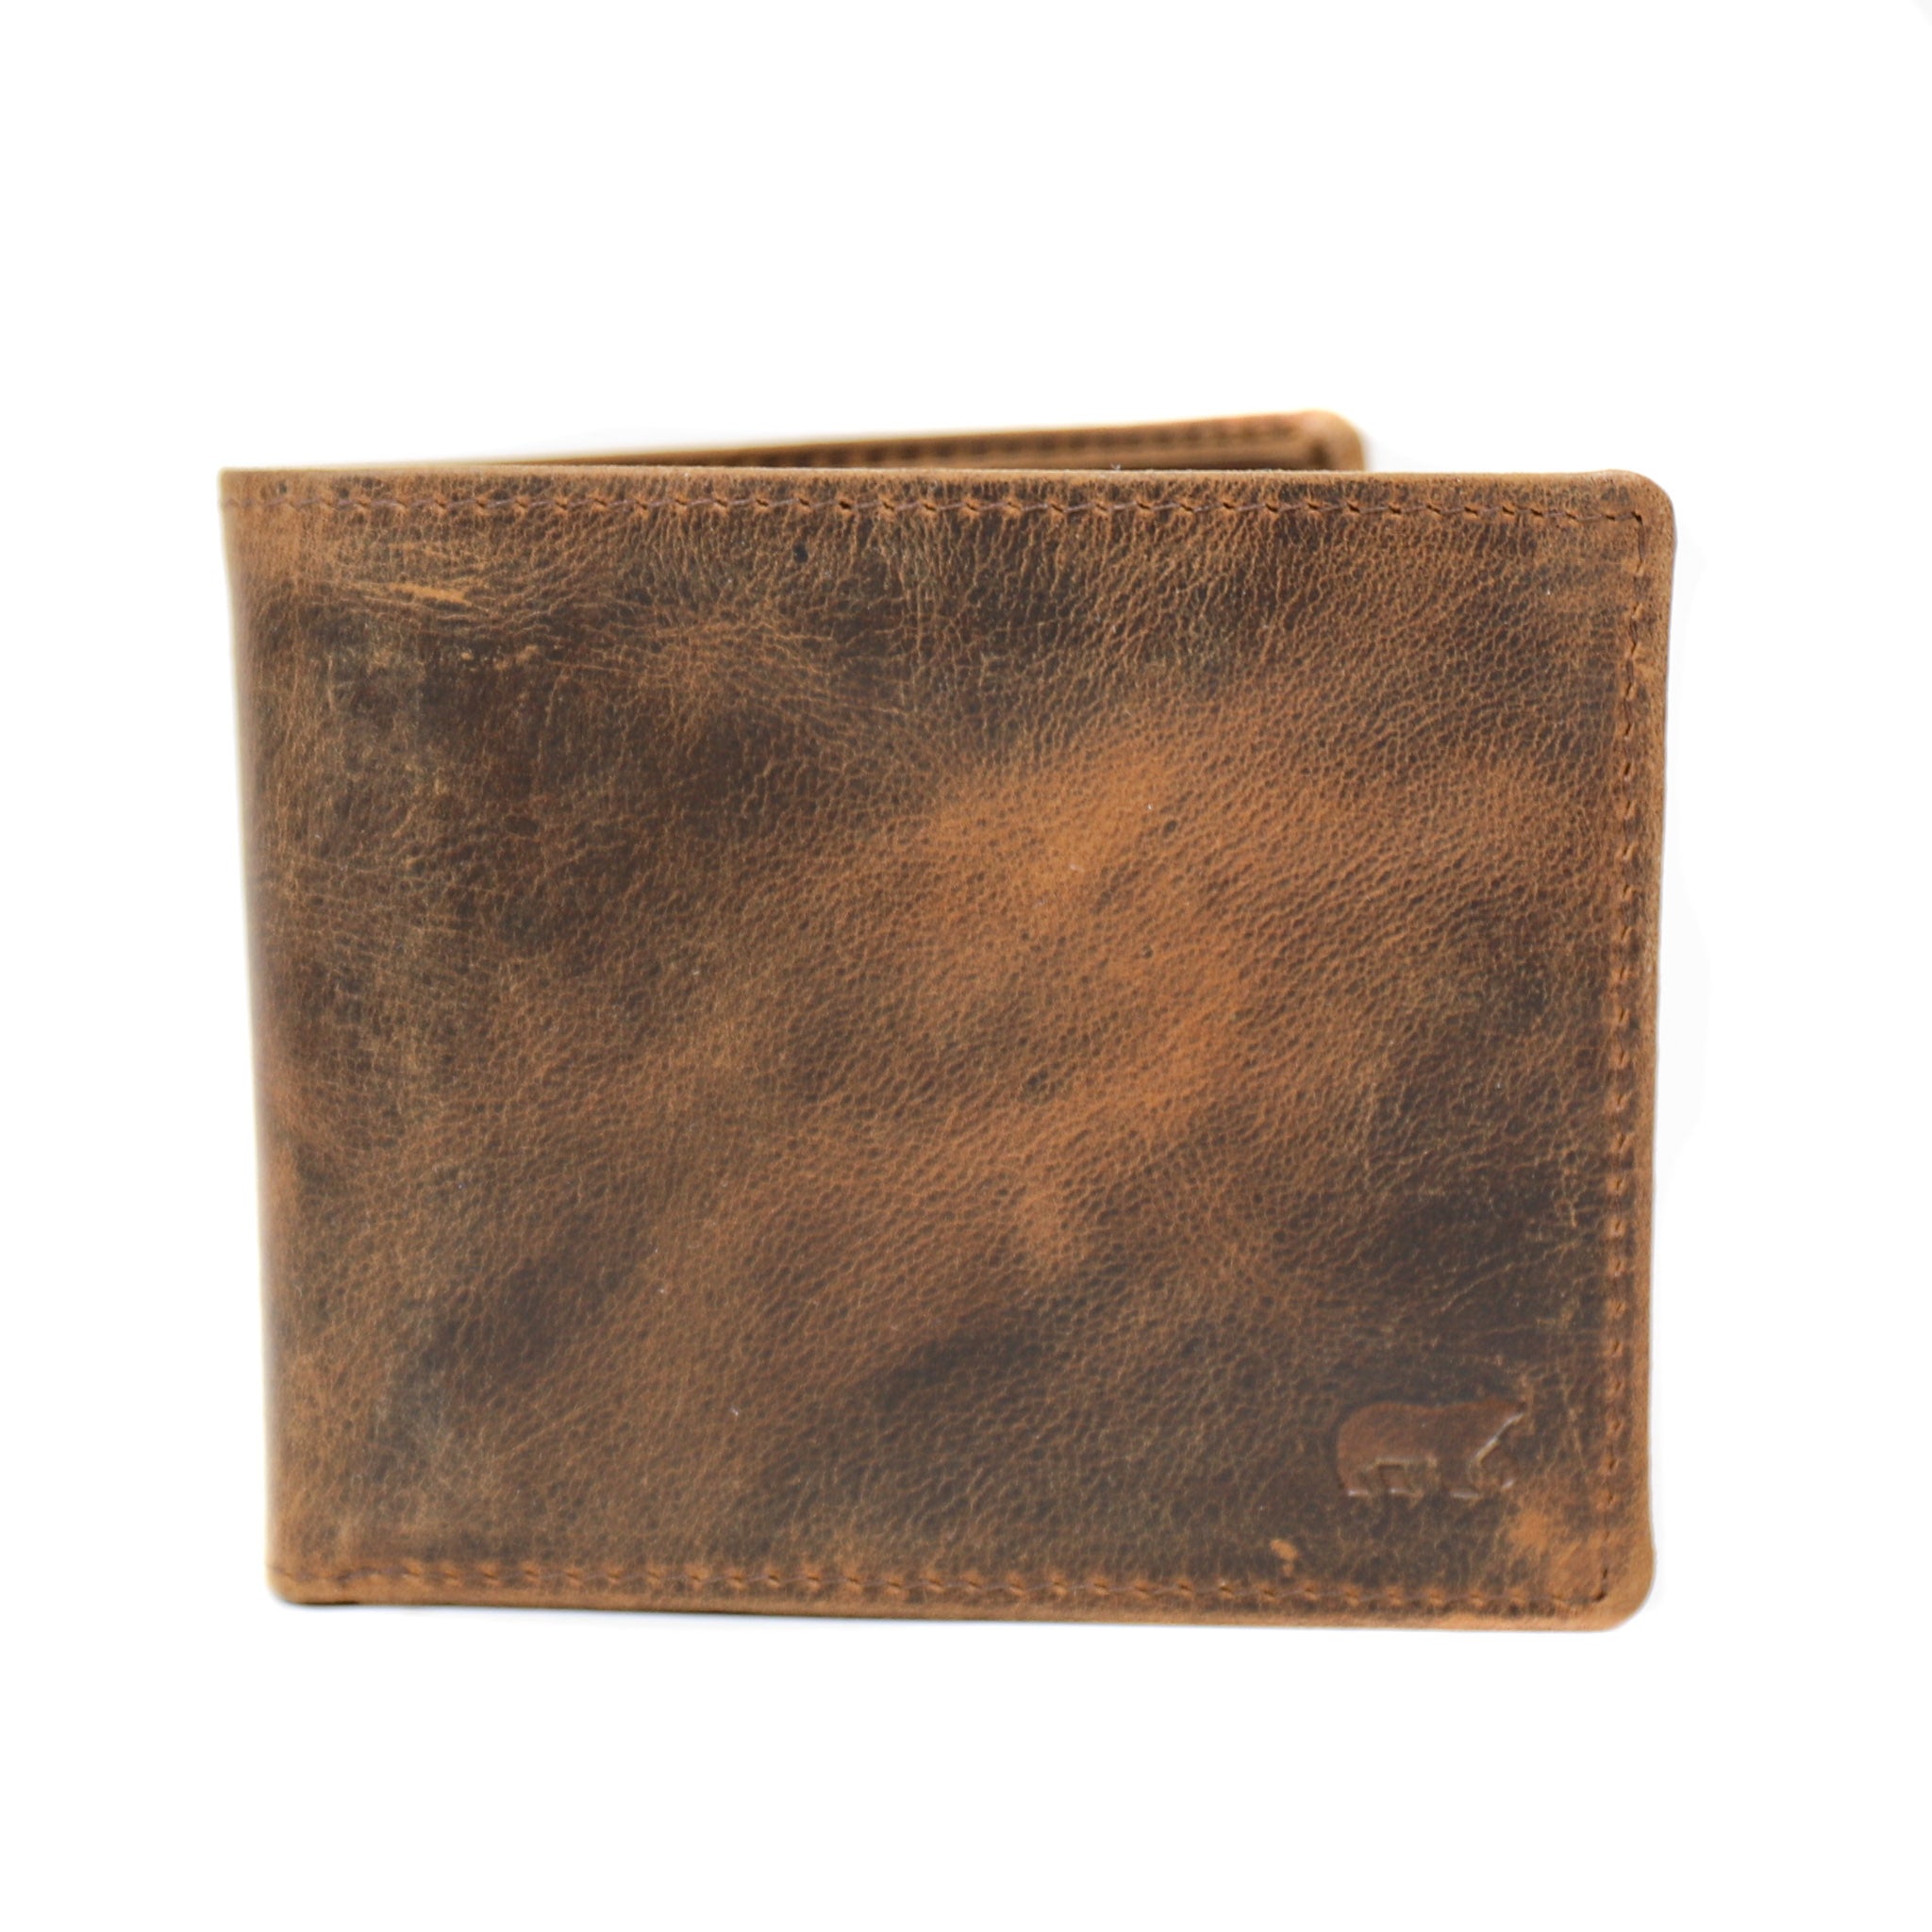 Brieftasche 'Tom' vintage braun - VG 8731